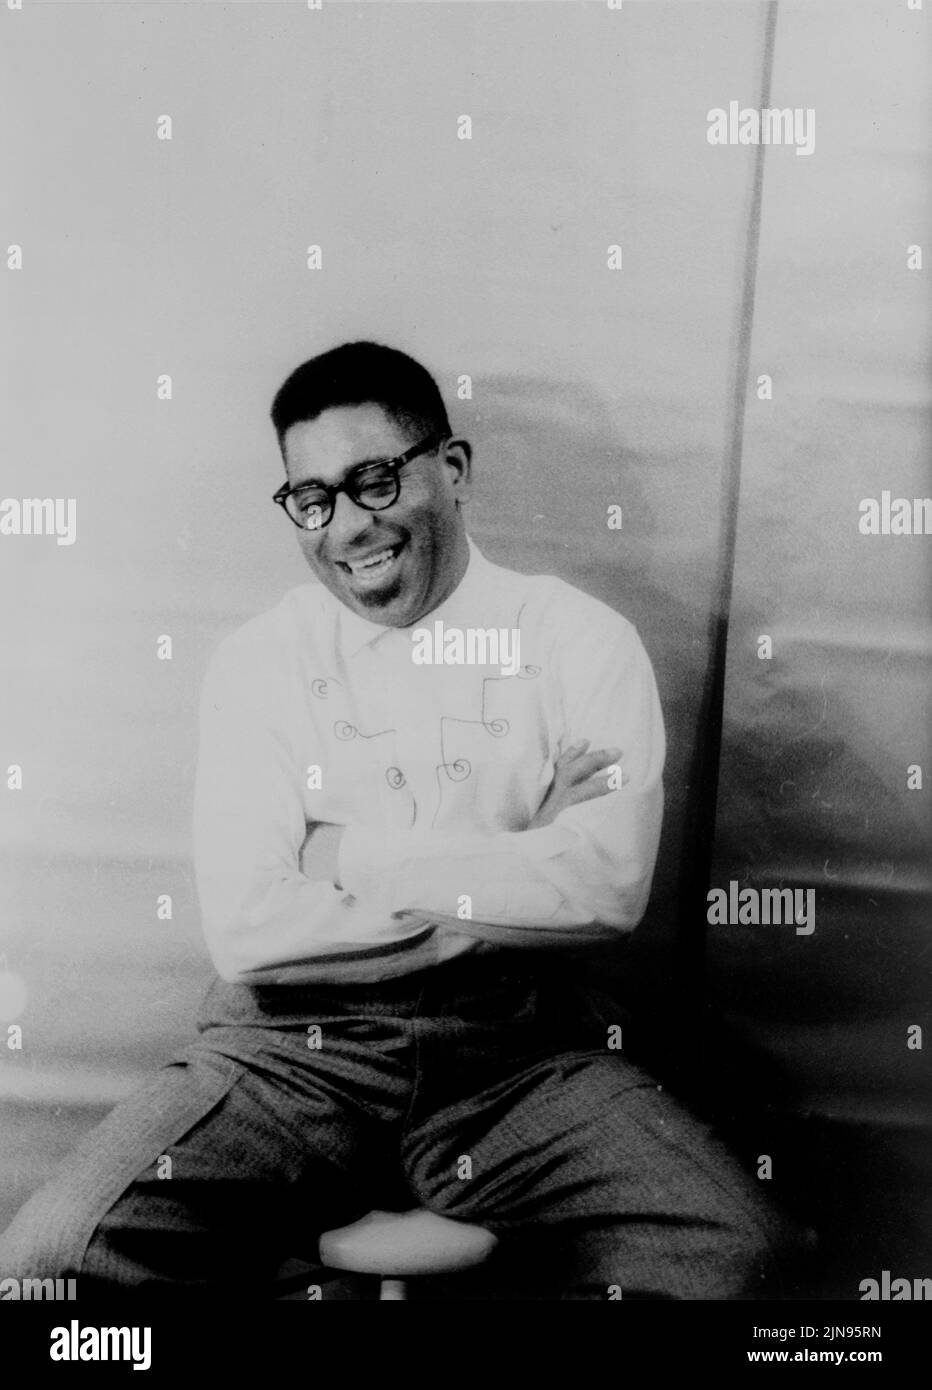 Stati Uniti d'America -- 02 dic 1955 -- il ritratto del musicista jazz Dizzy Gillespie ( John Birks 1917-1993 ) -- foto di Carl van Vechten/Atlas Archivio foto Foto Stock